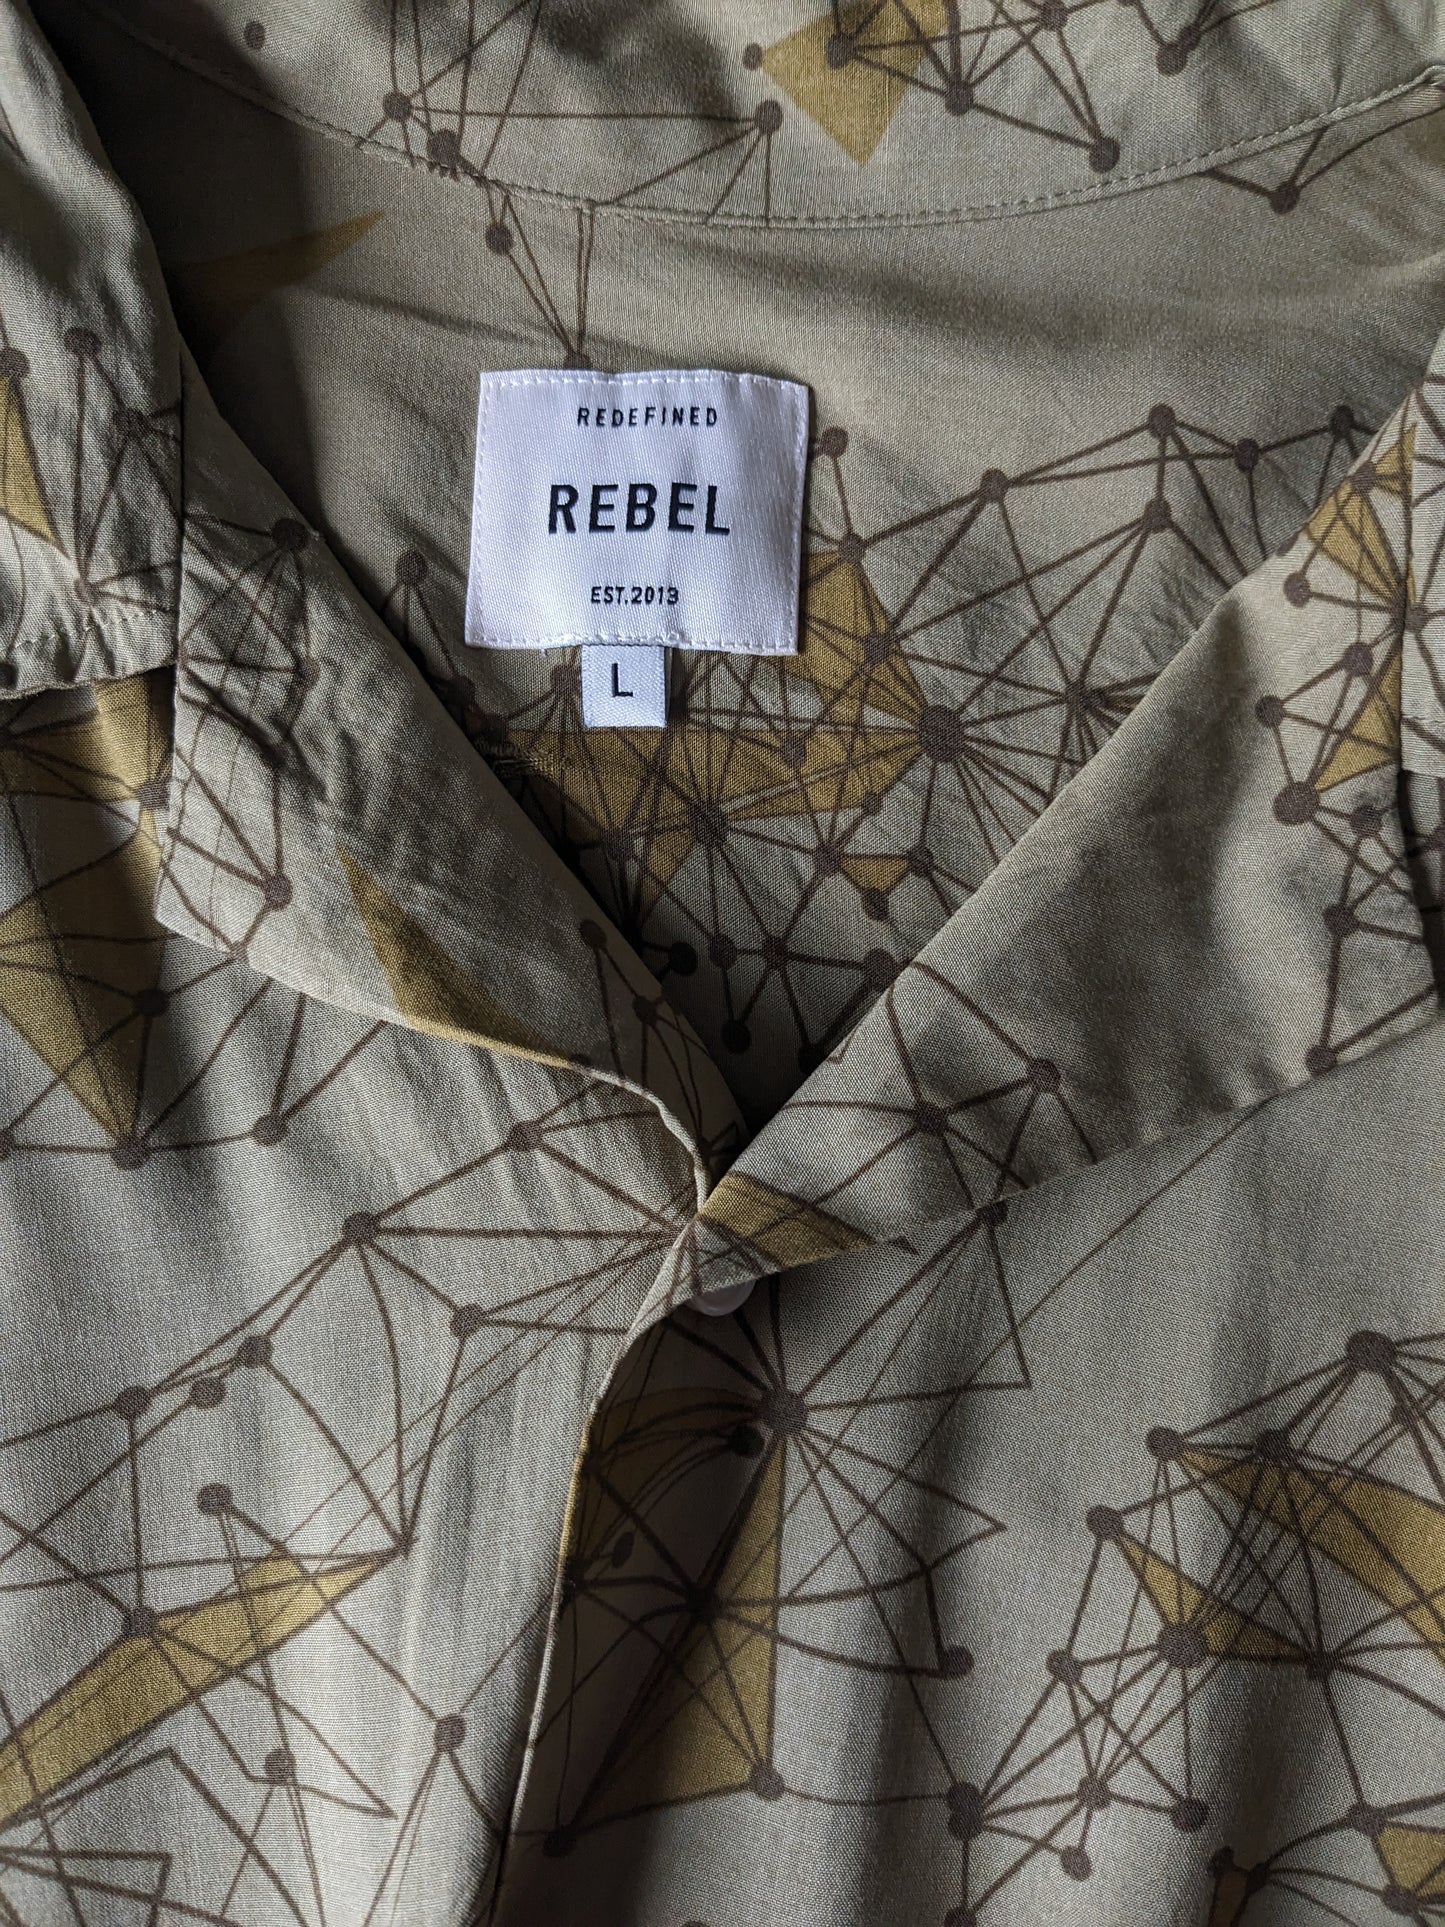 Rebell -Druck -Shirt Kurzarm. Grüner Druck. Größe L / XL.